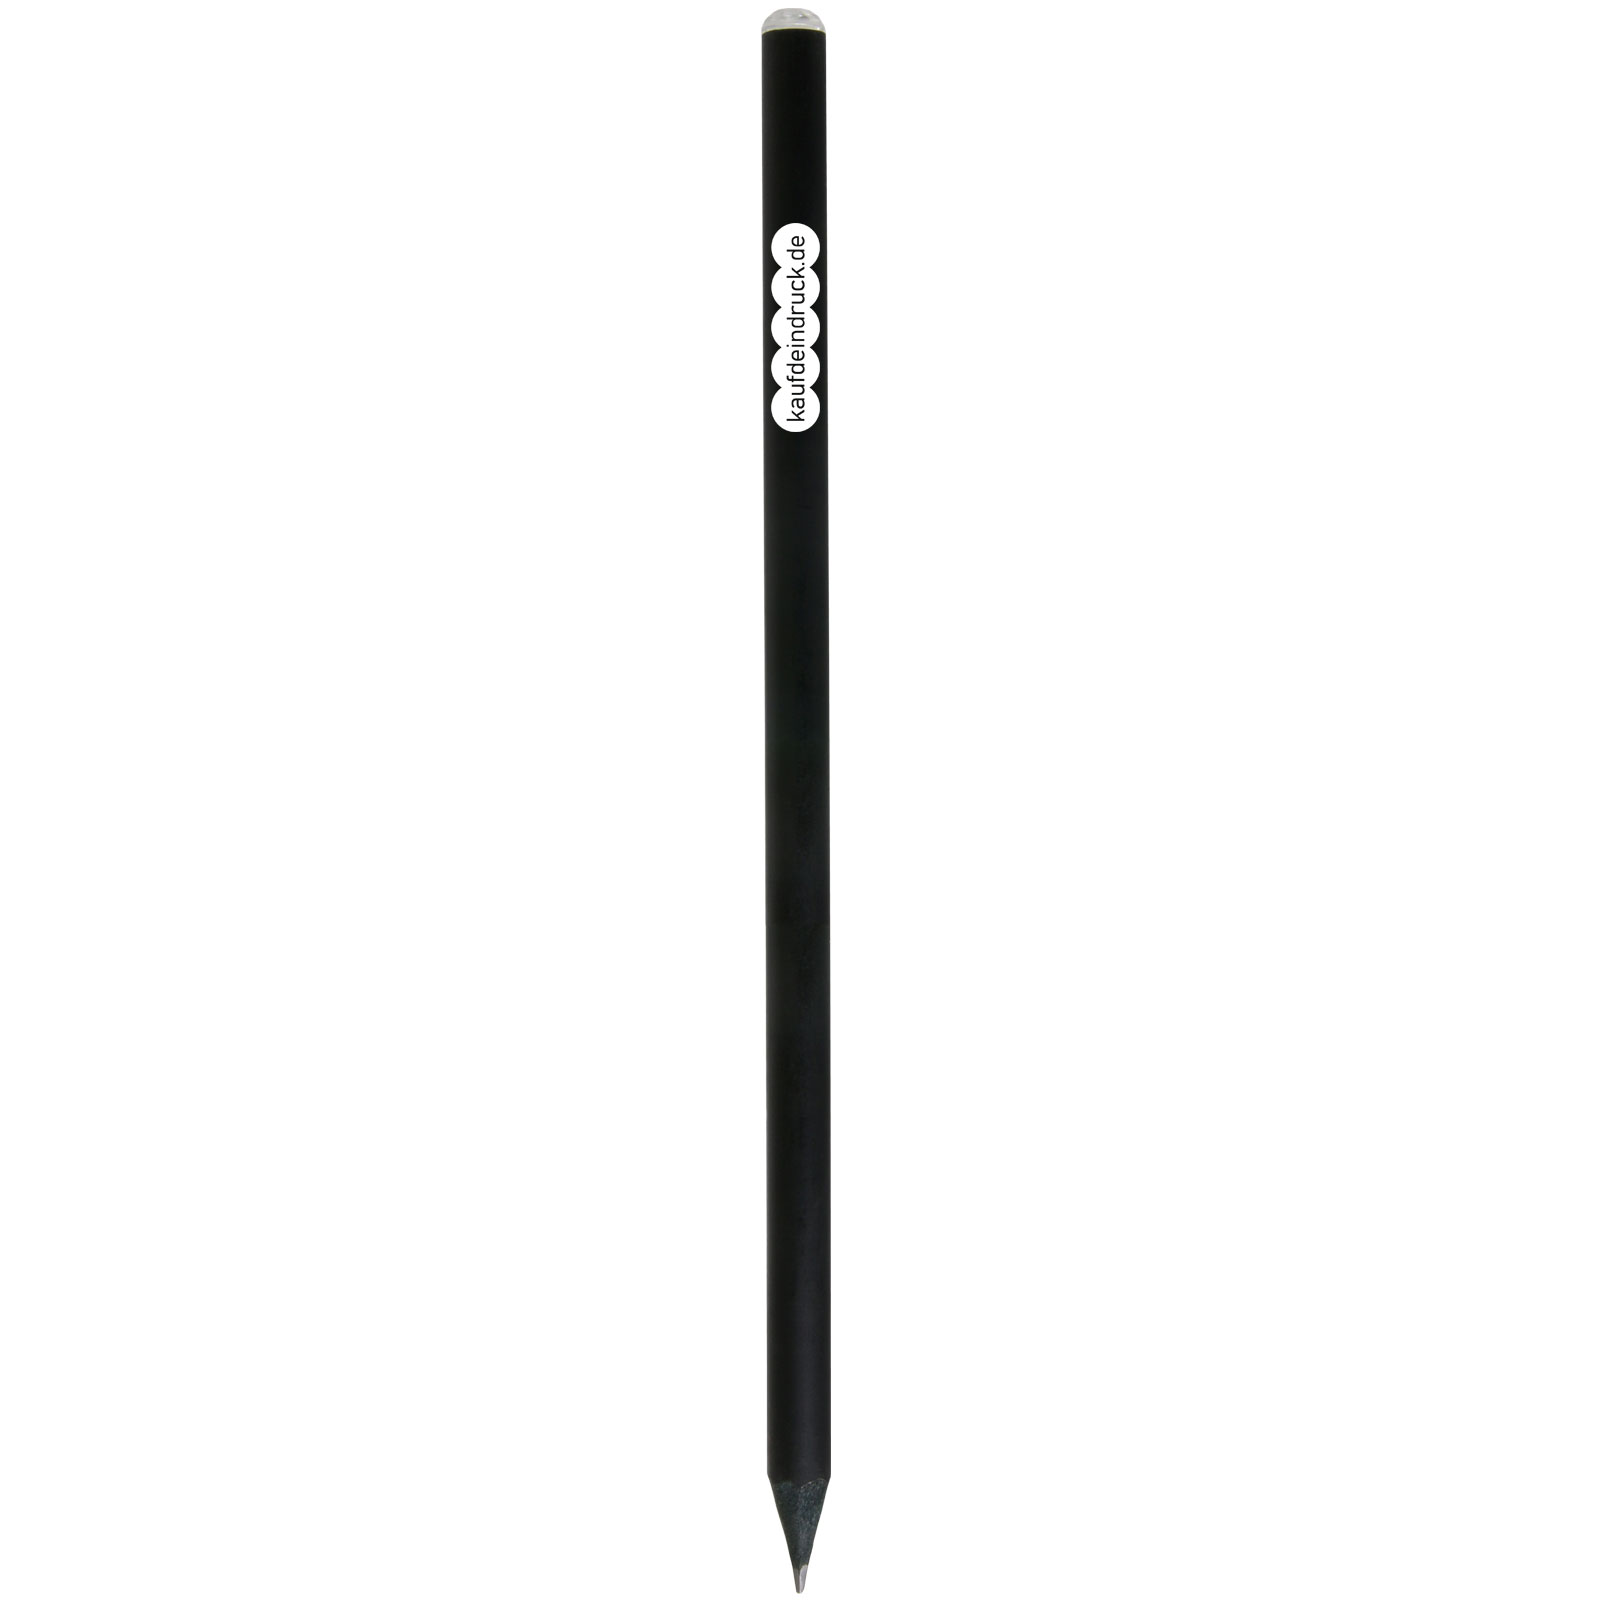 Bleistift KENTO schwarz Stift mit Glitzer mit Druck Werbung bedruckt